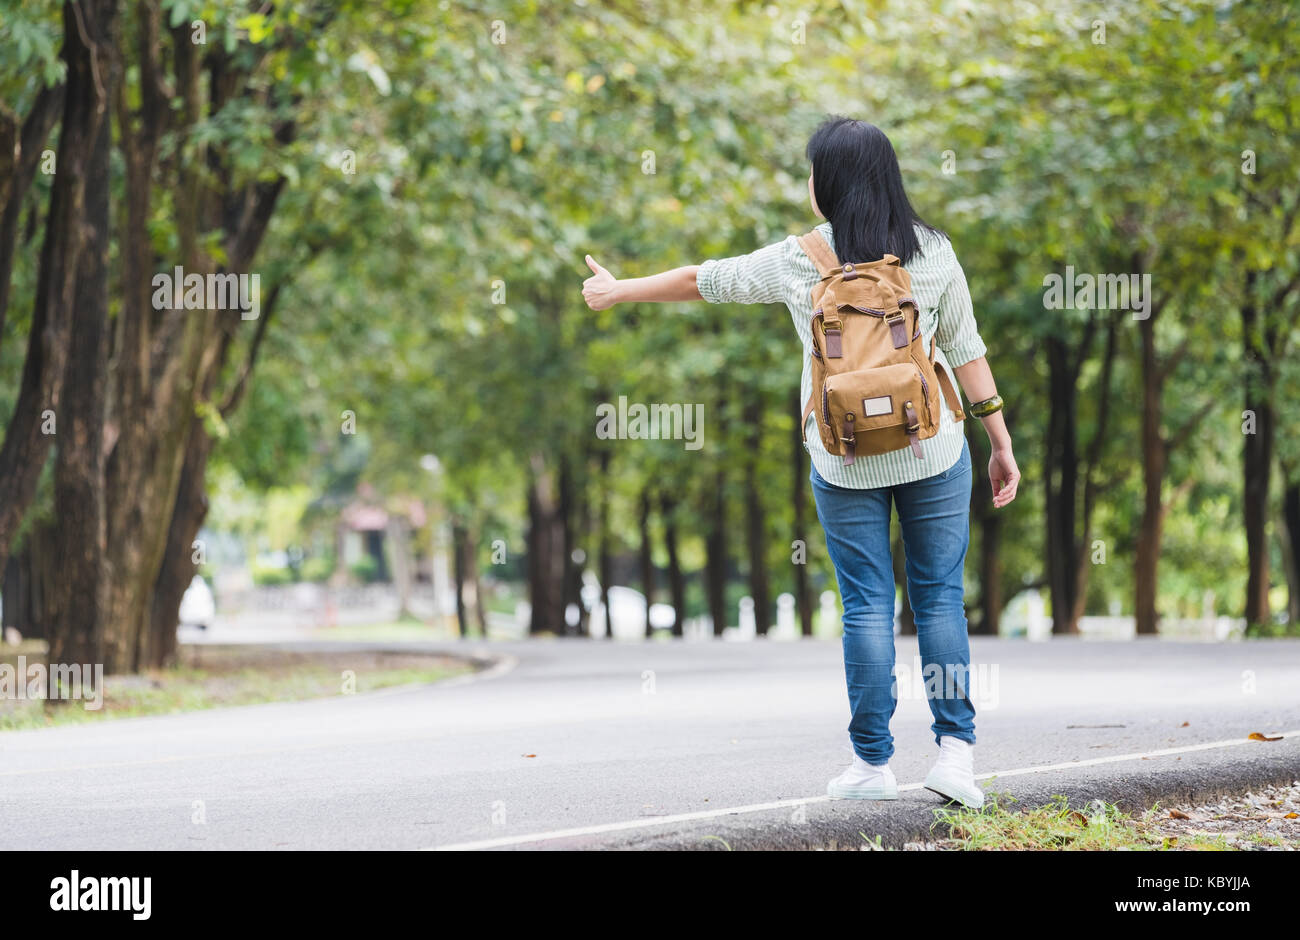 Asiatische Frau Backpacker auf Landstraße mit Baum im Frühjahr saisonale, allein reisen oder Alleinreisende Konzept. Stockfoto